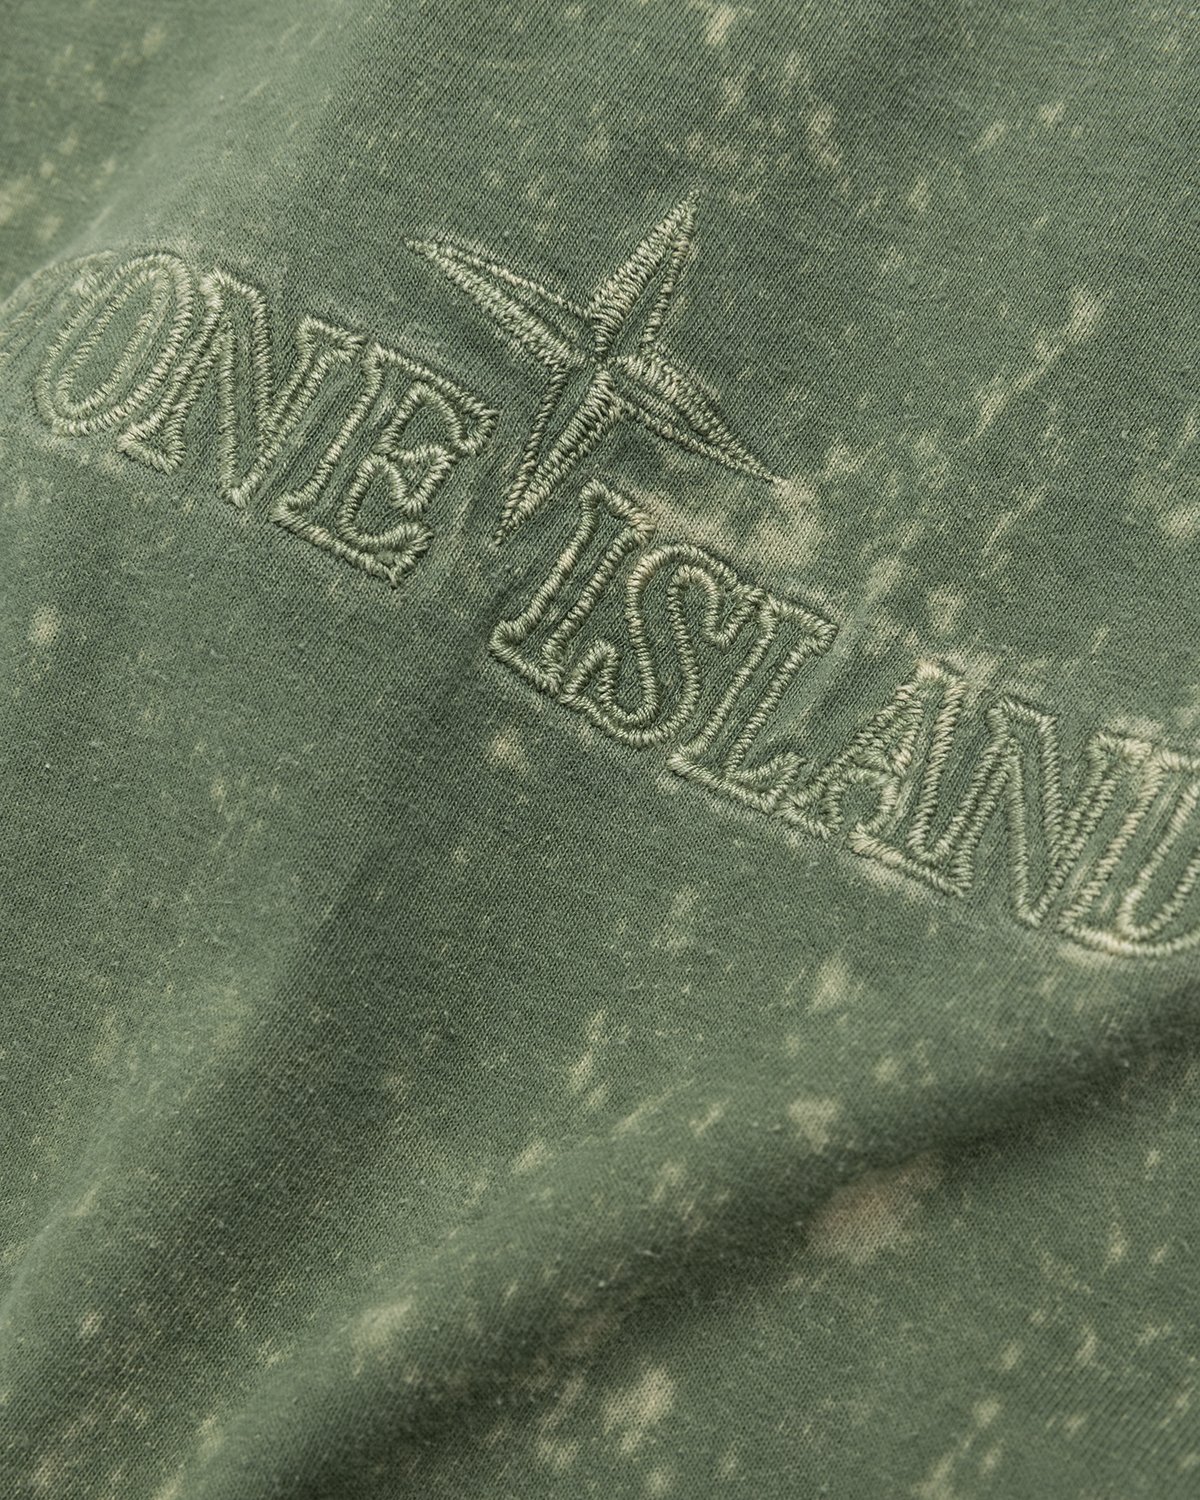 Stone Island - 20945 Off-Dye T-Shirt Olive - Clothing - Green - Image 5